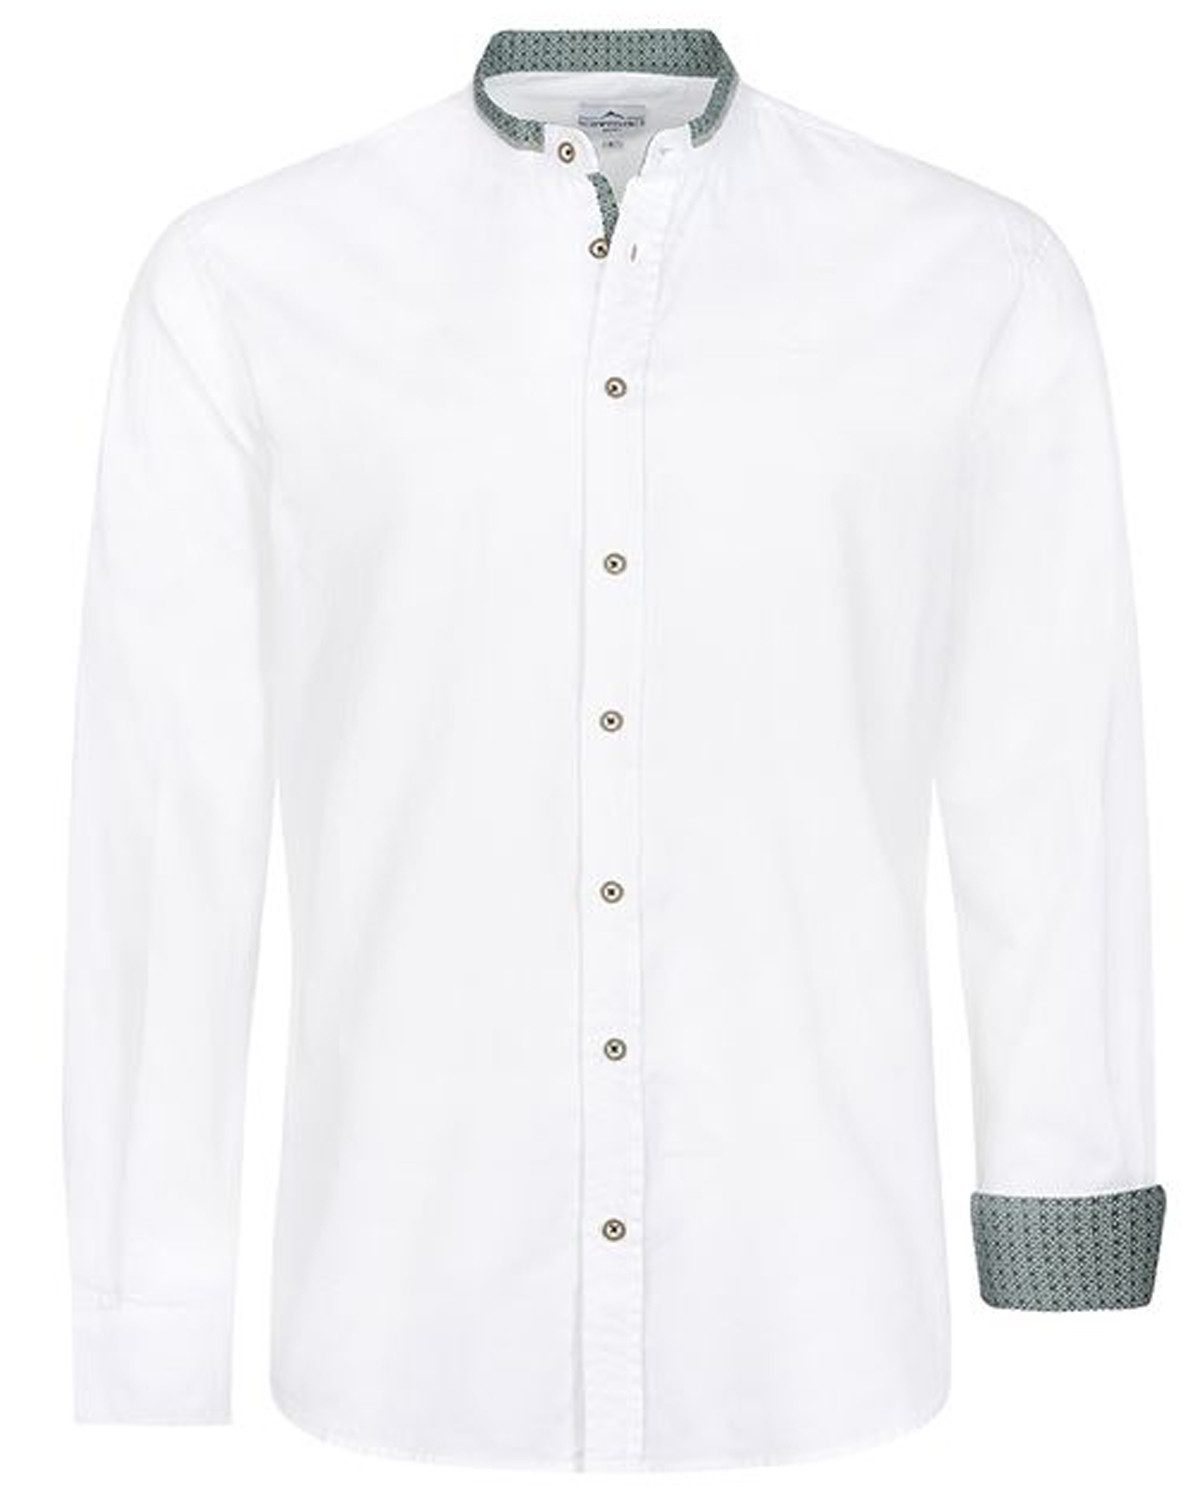 Maddox Trachtenhemd Trachtenhemd - Hemd-108, Weiß Grün